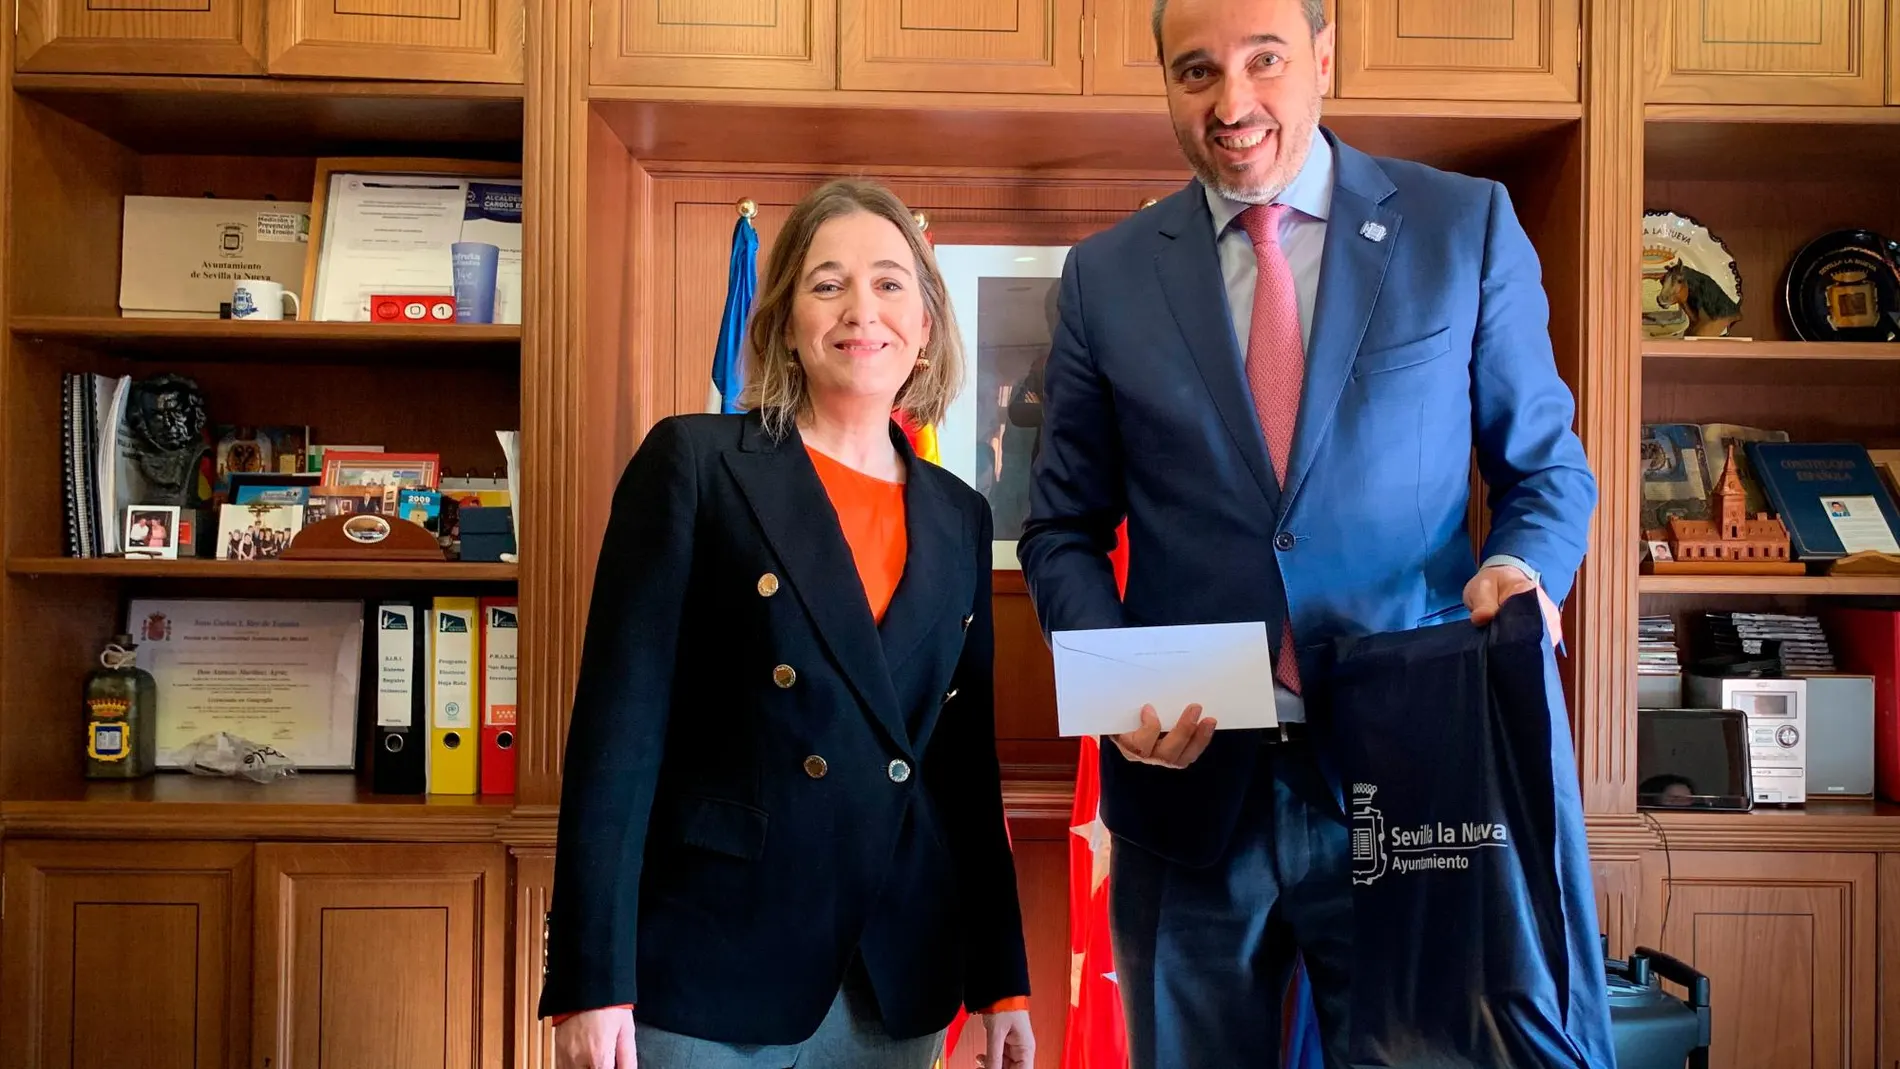 Marta Rivera de la Cruz junto a Asensio Martínez, alcalde de Sevilla la Nueva